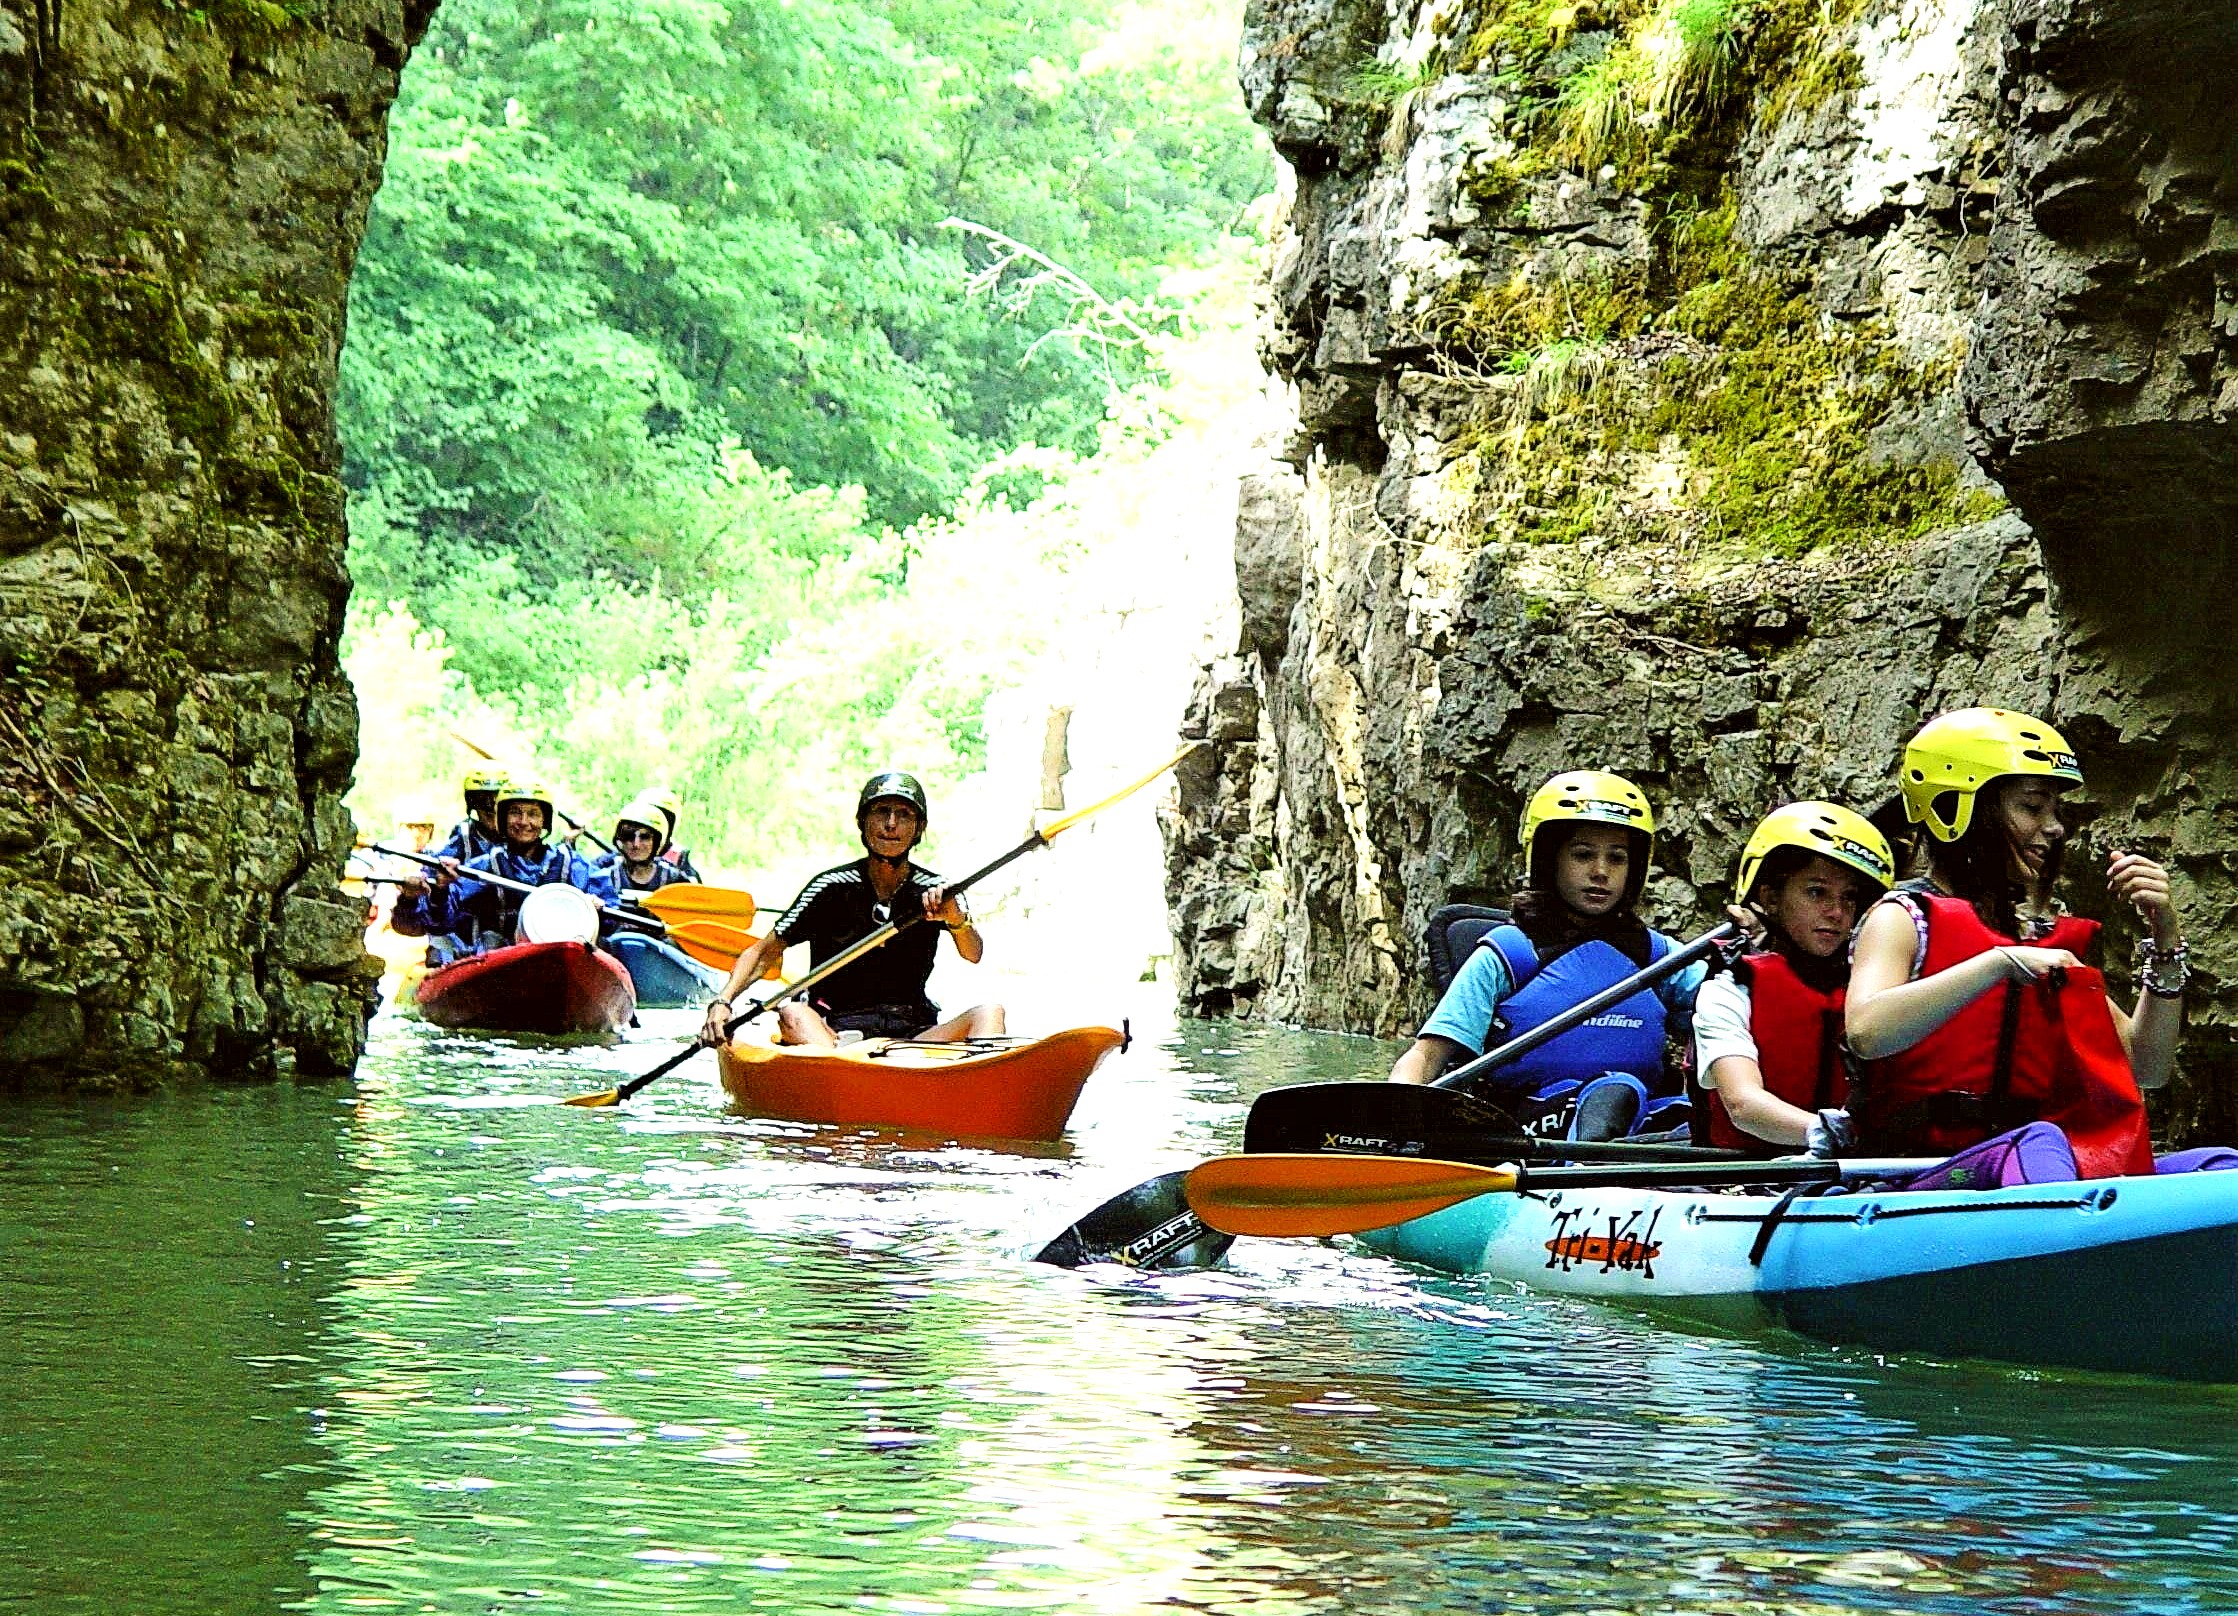 A group of kayakers explore the lake of Santa Giustina